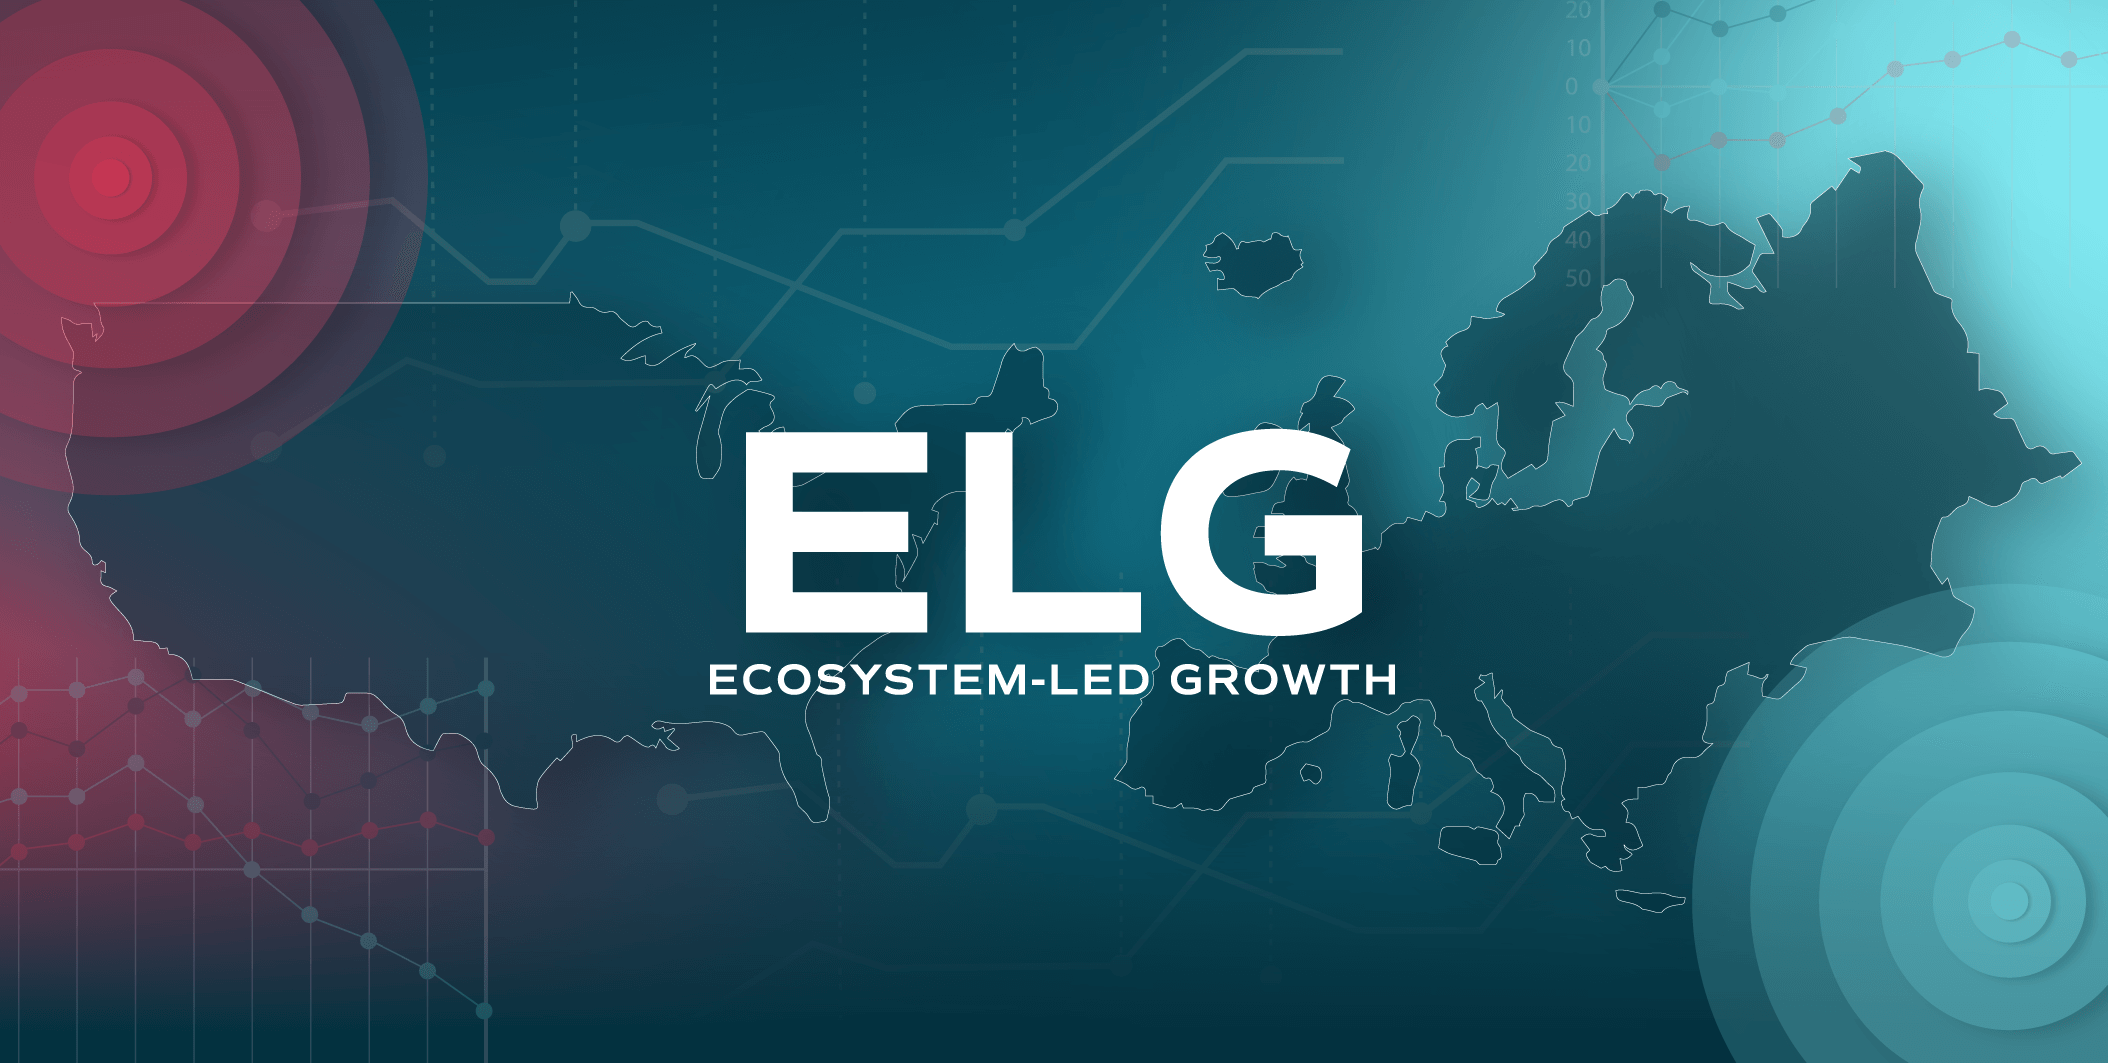 crossbeam-ecosystem-led-growth-elg-europe-uk-us-pep-popularity